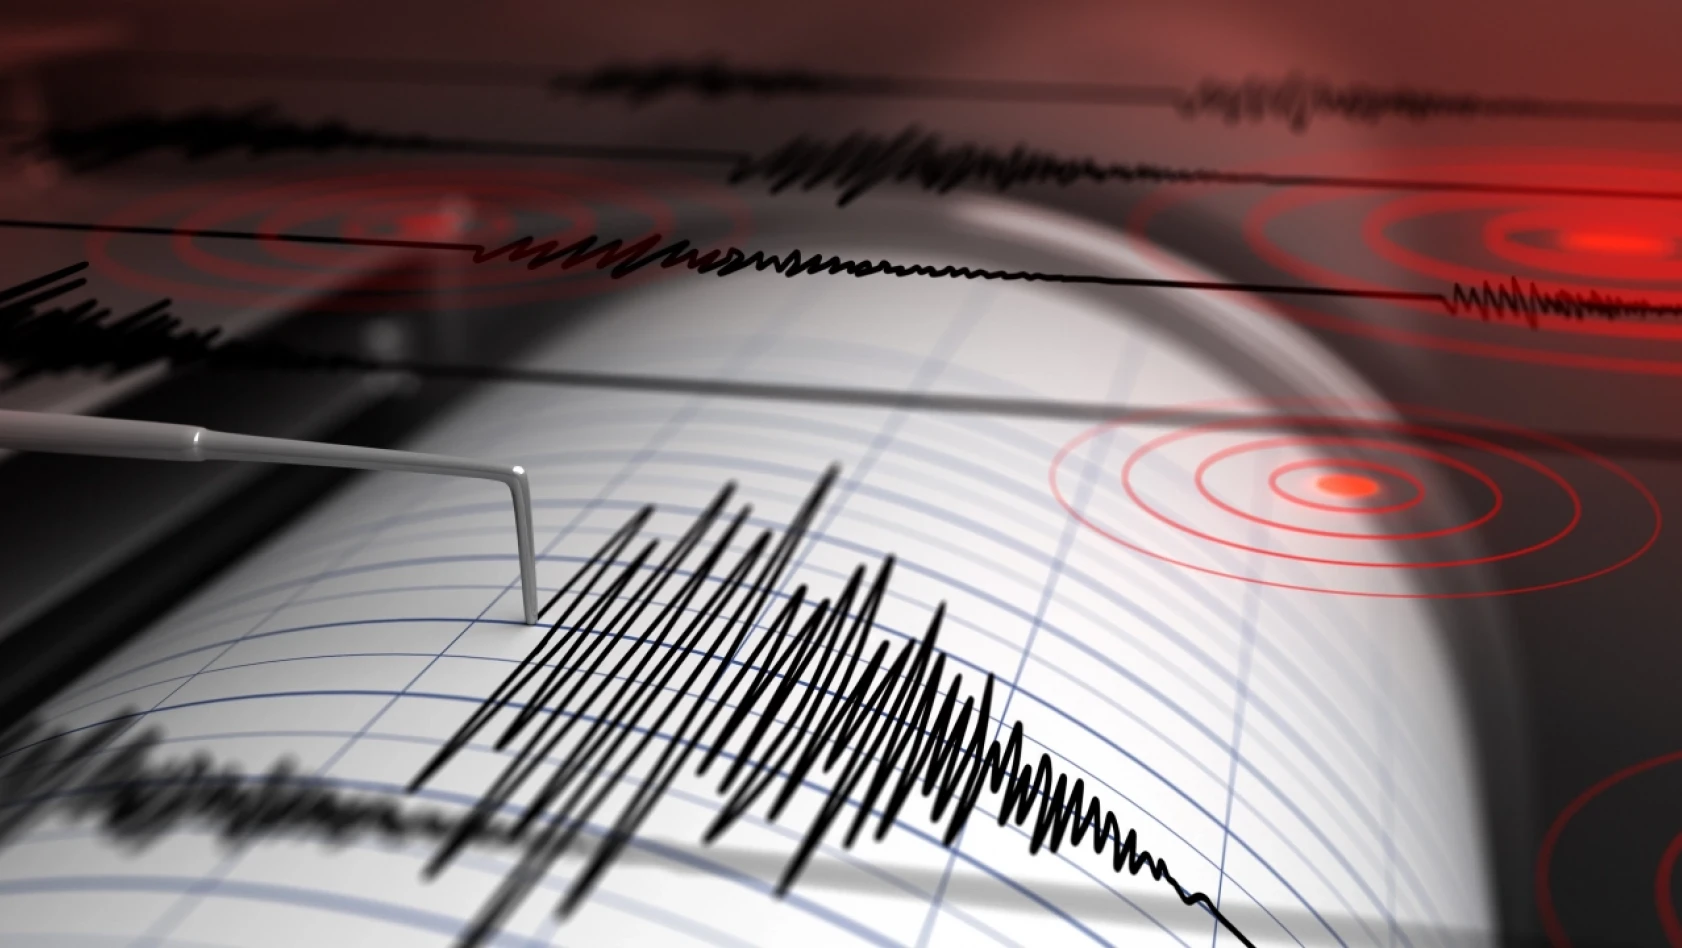 Bilim dünyasında önemli gelişme! 7 üzeri depremler önceden haber verilecek